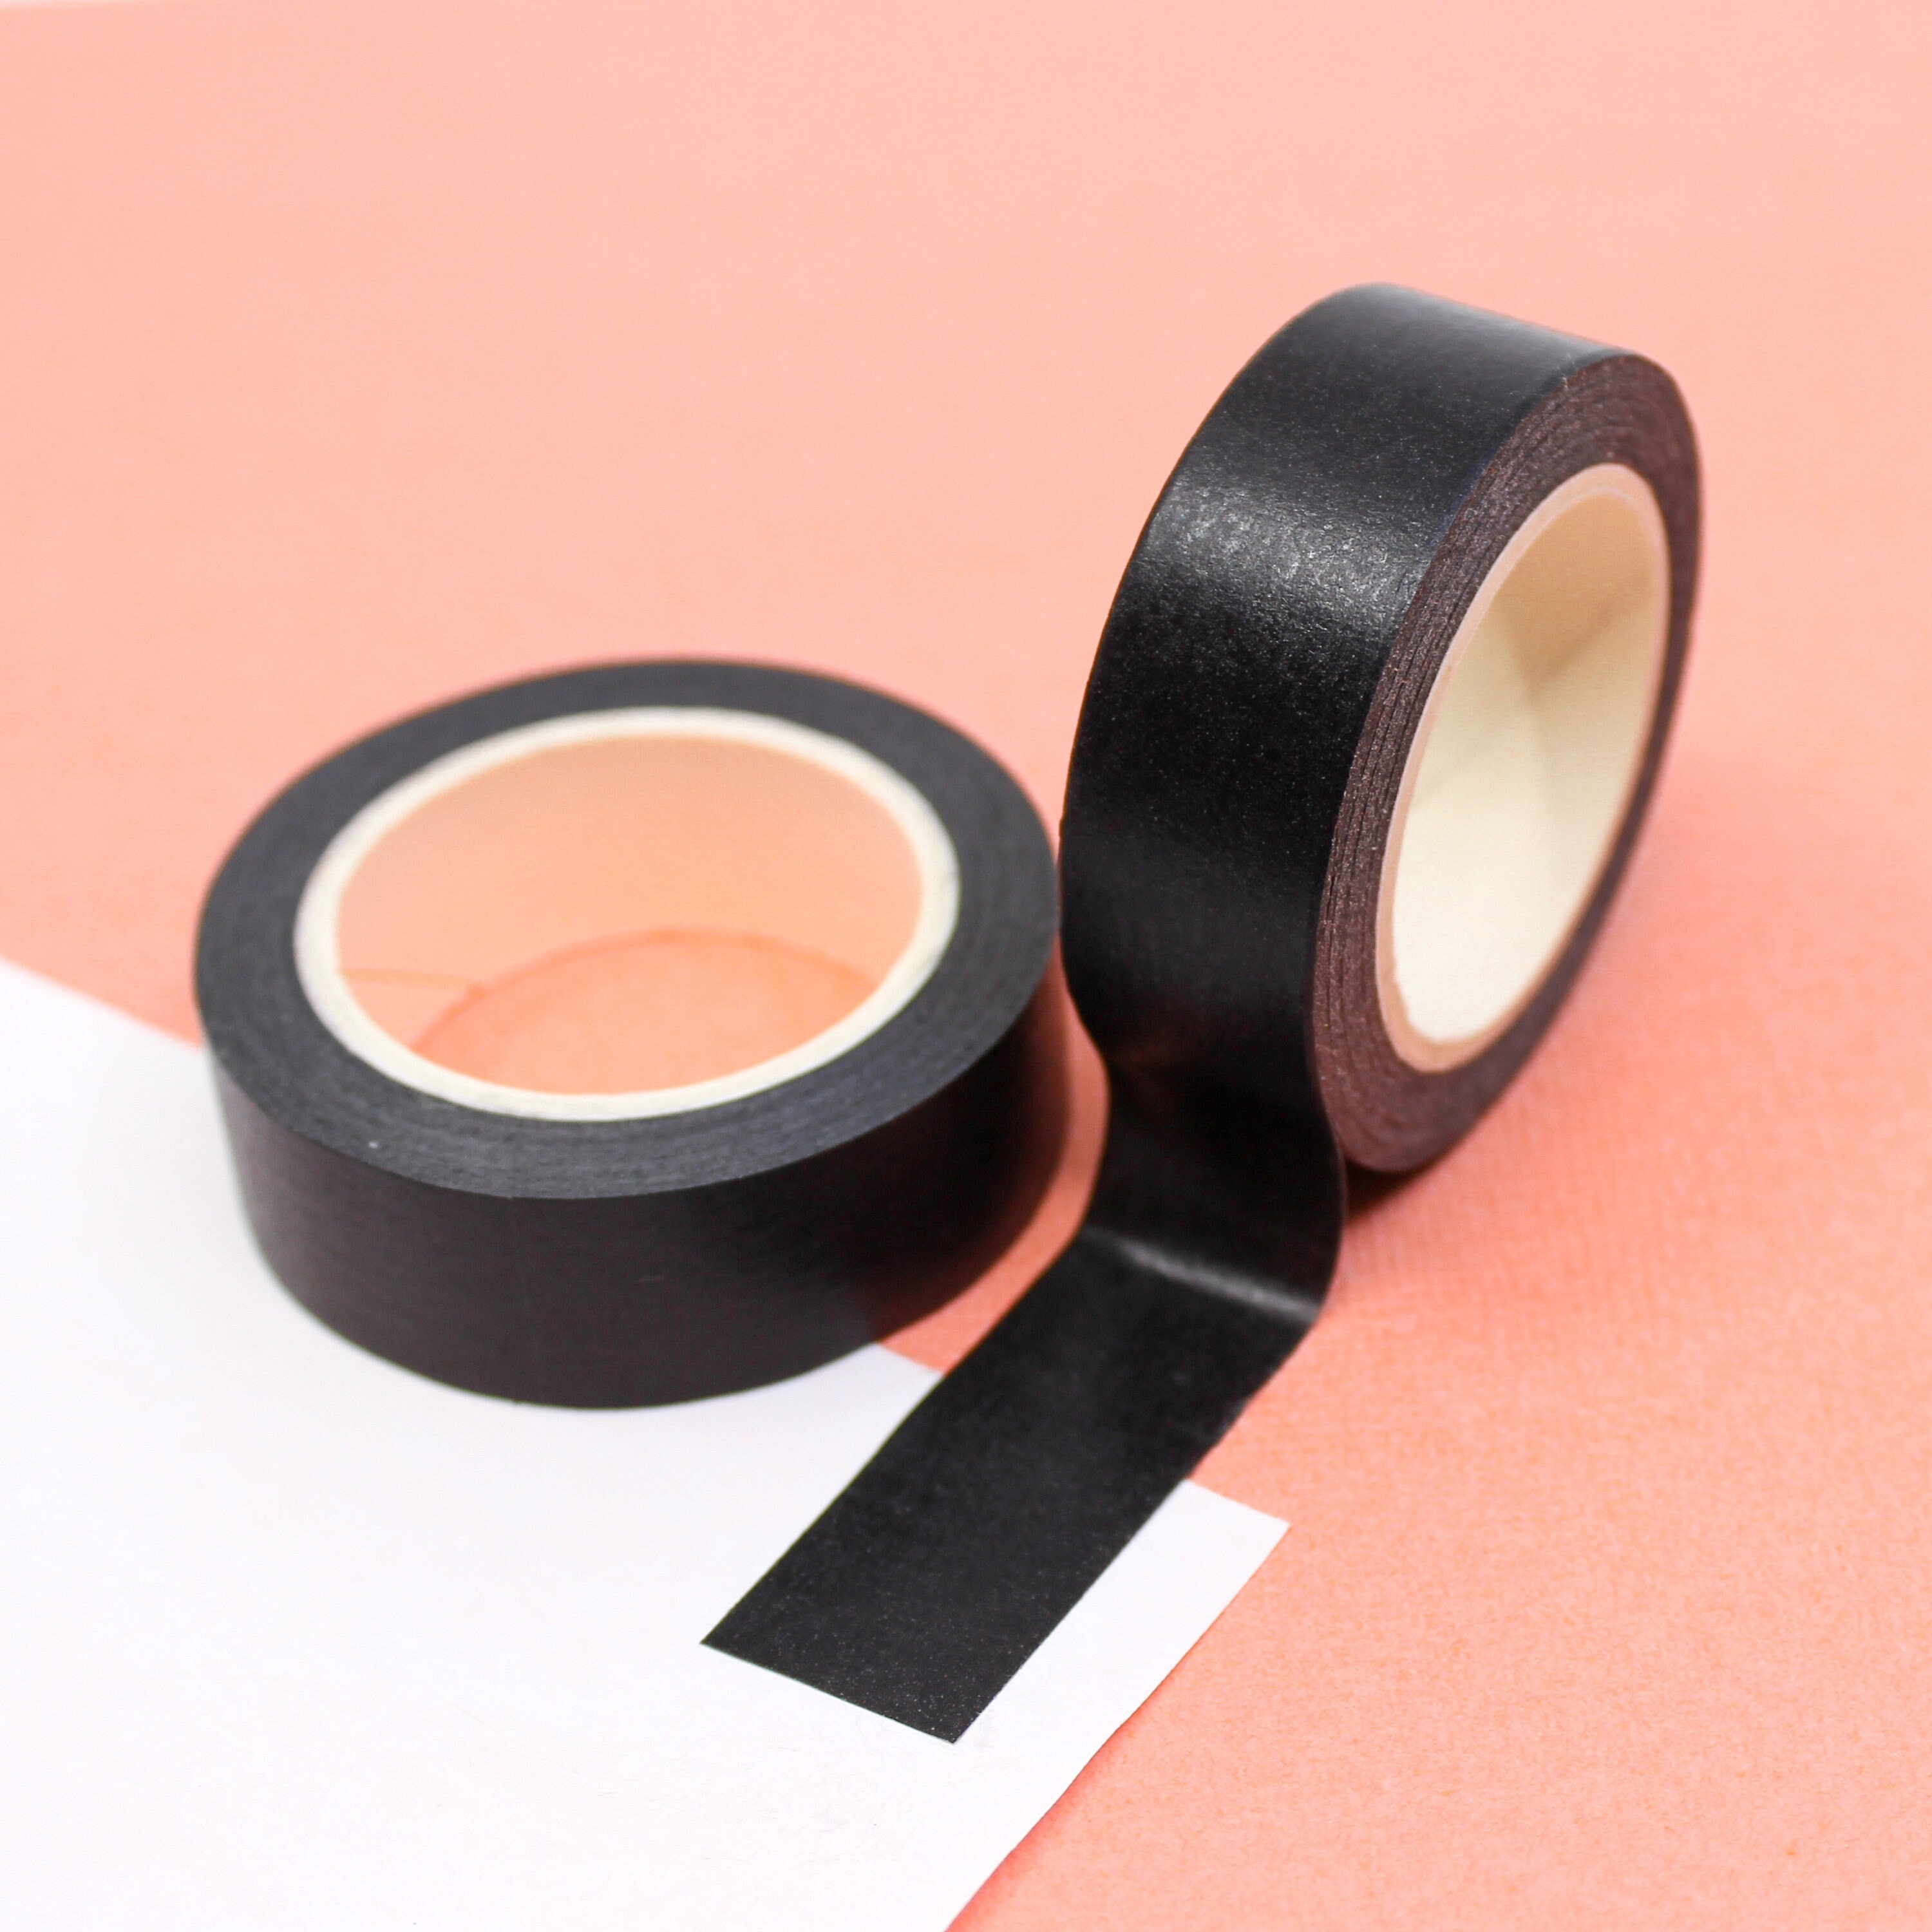 Matte Black Permacel Pin Prick Free Tape, 24mm x 50m, Shurtape 743,  Photographers Masking Tape, Framers Tape